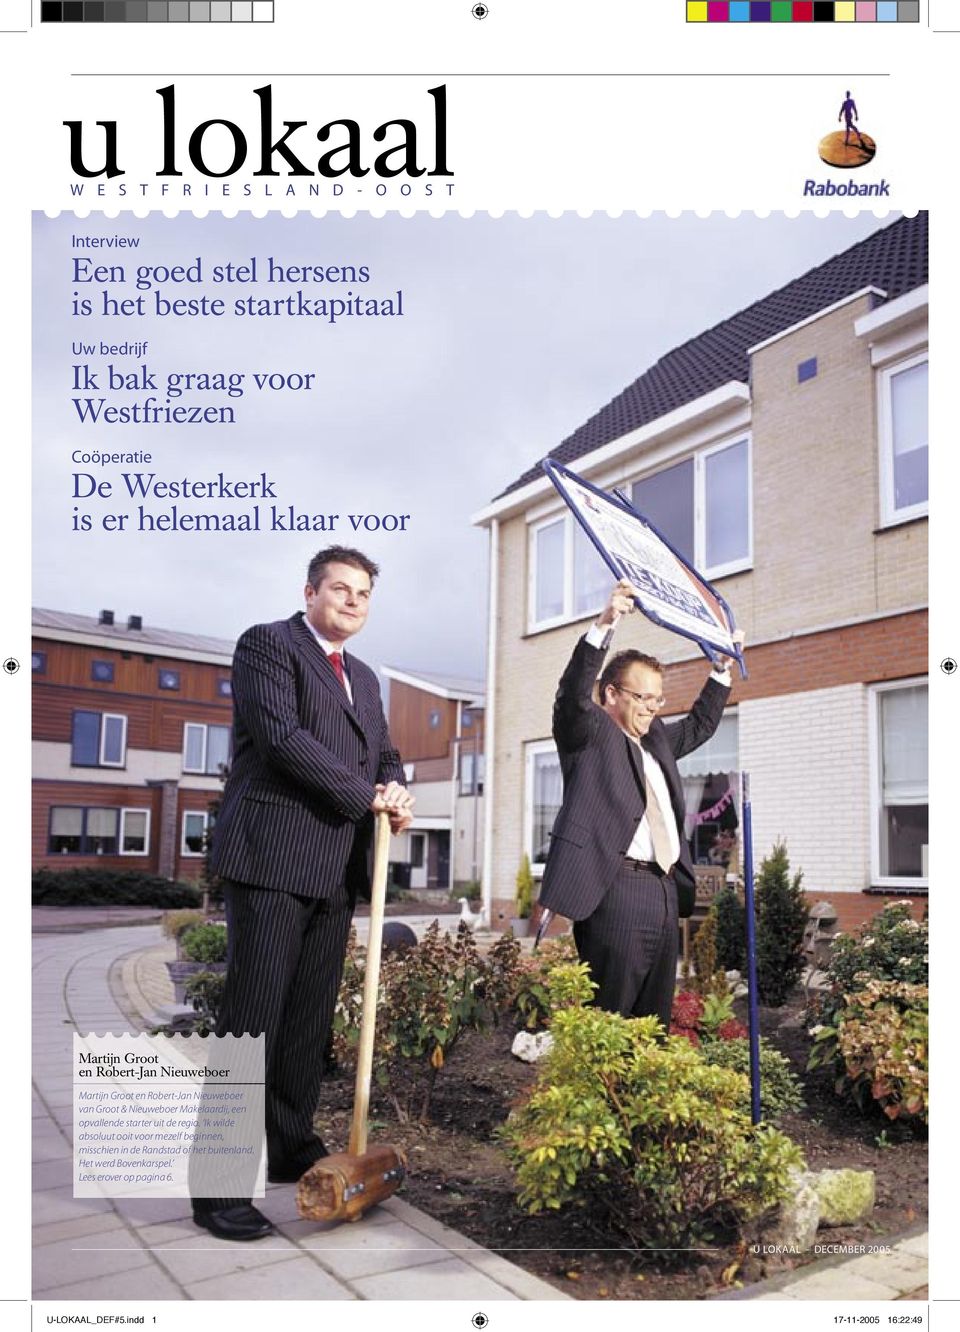 Robert-Jan Nieuweboer van Groot & Nieuweboer Makelaardij, een opvallende starter uit de regio.